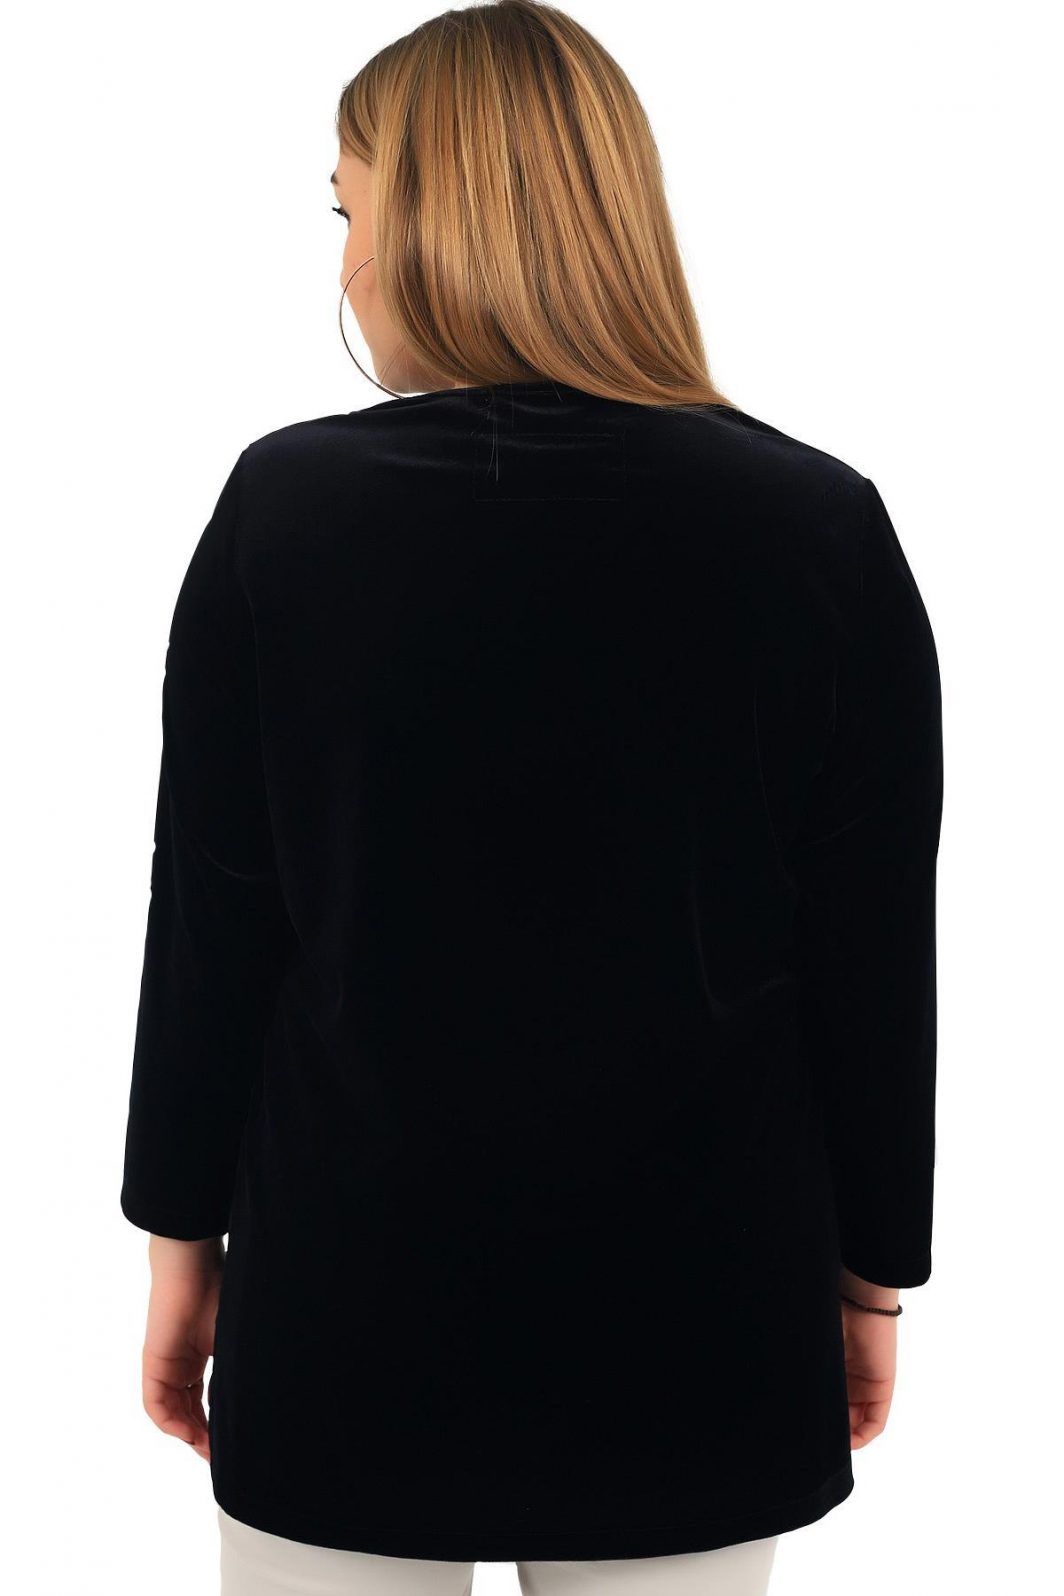 Fierte kadın büyük beden bluz lm43470 v yaka kadife siyah bluz